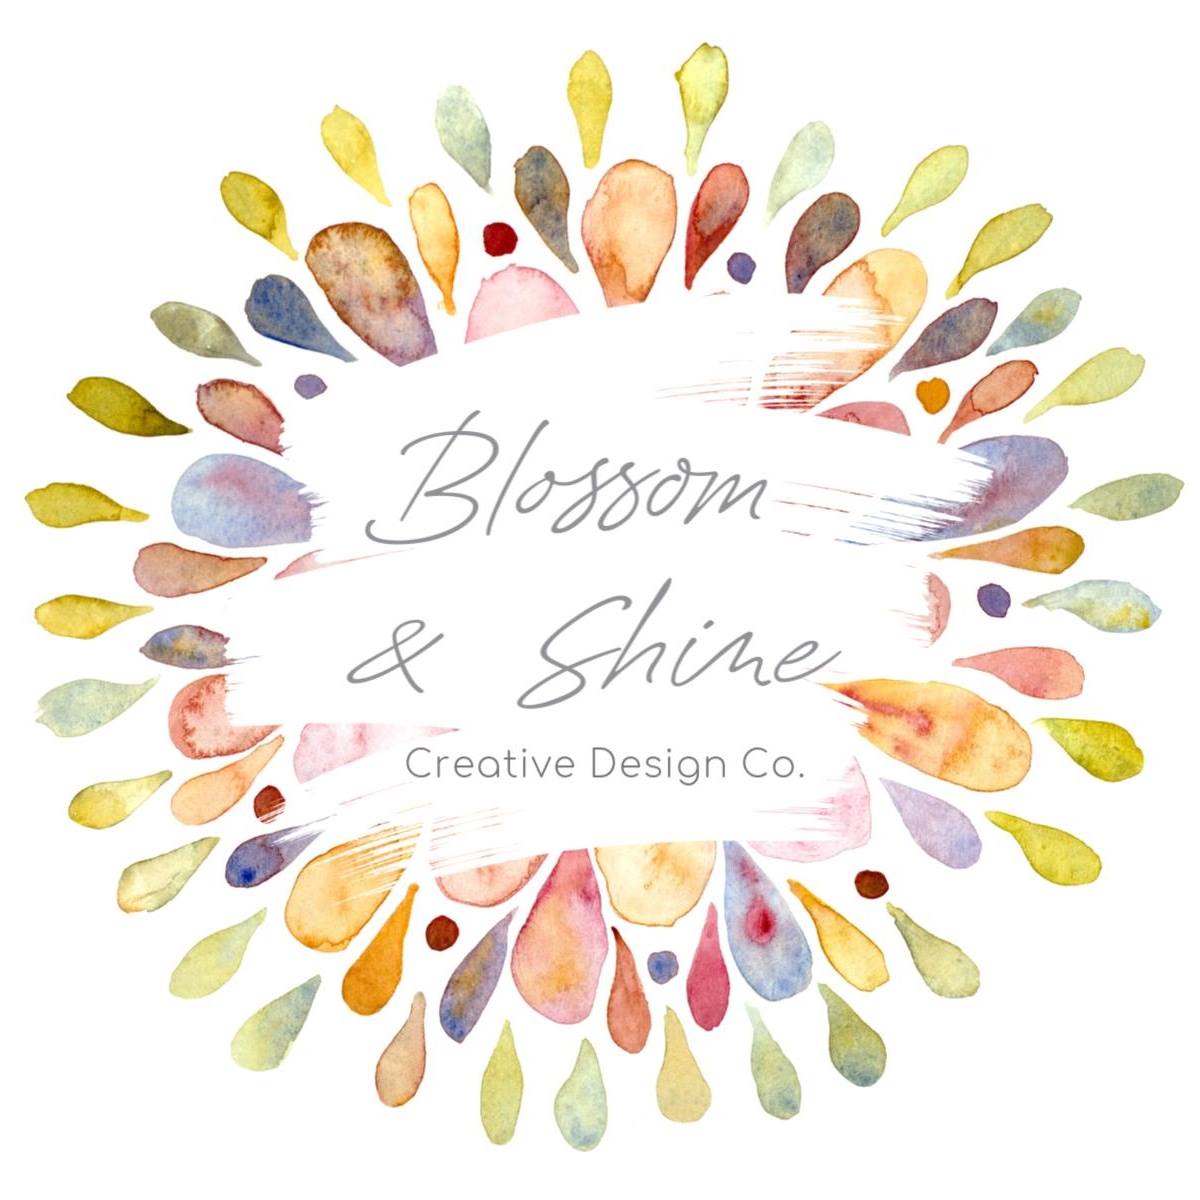 Logo image for Blossom & Shine Event Co.